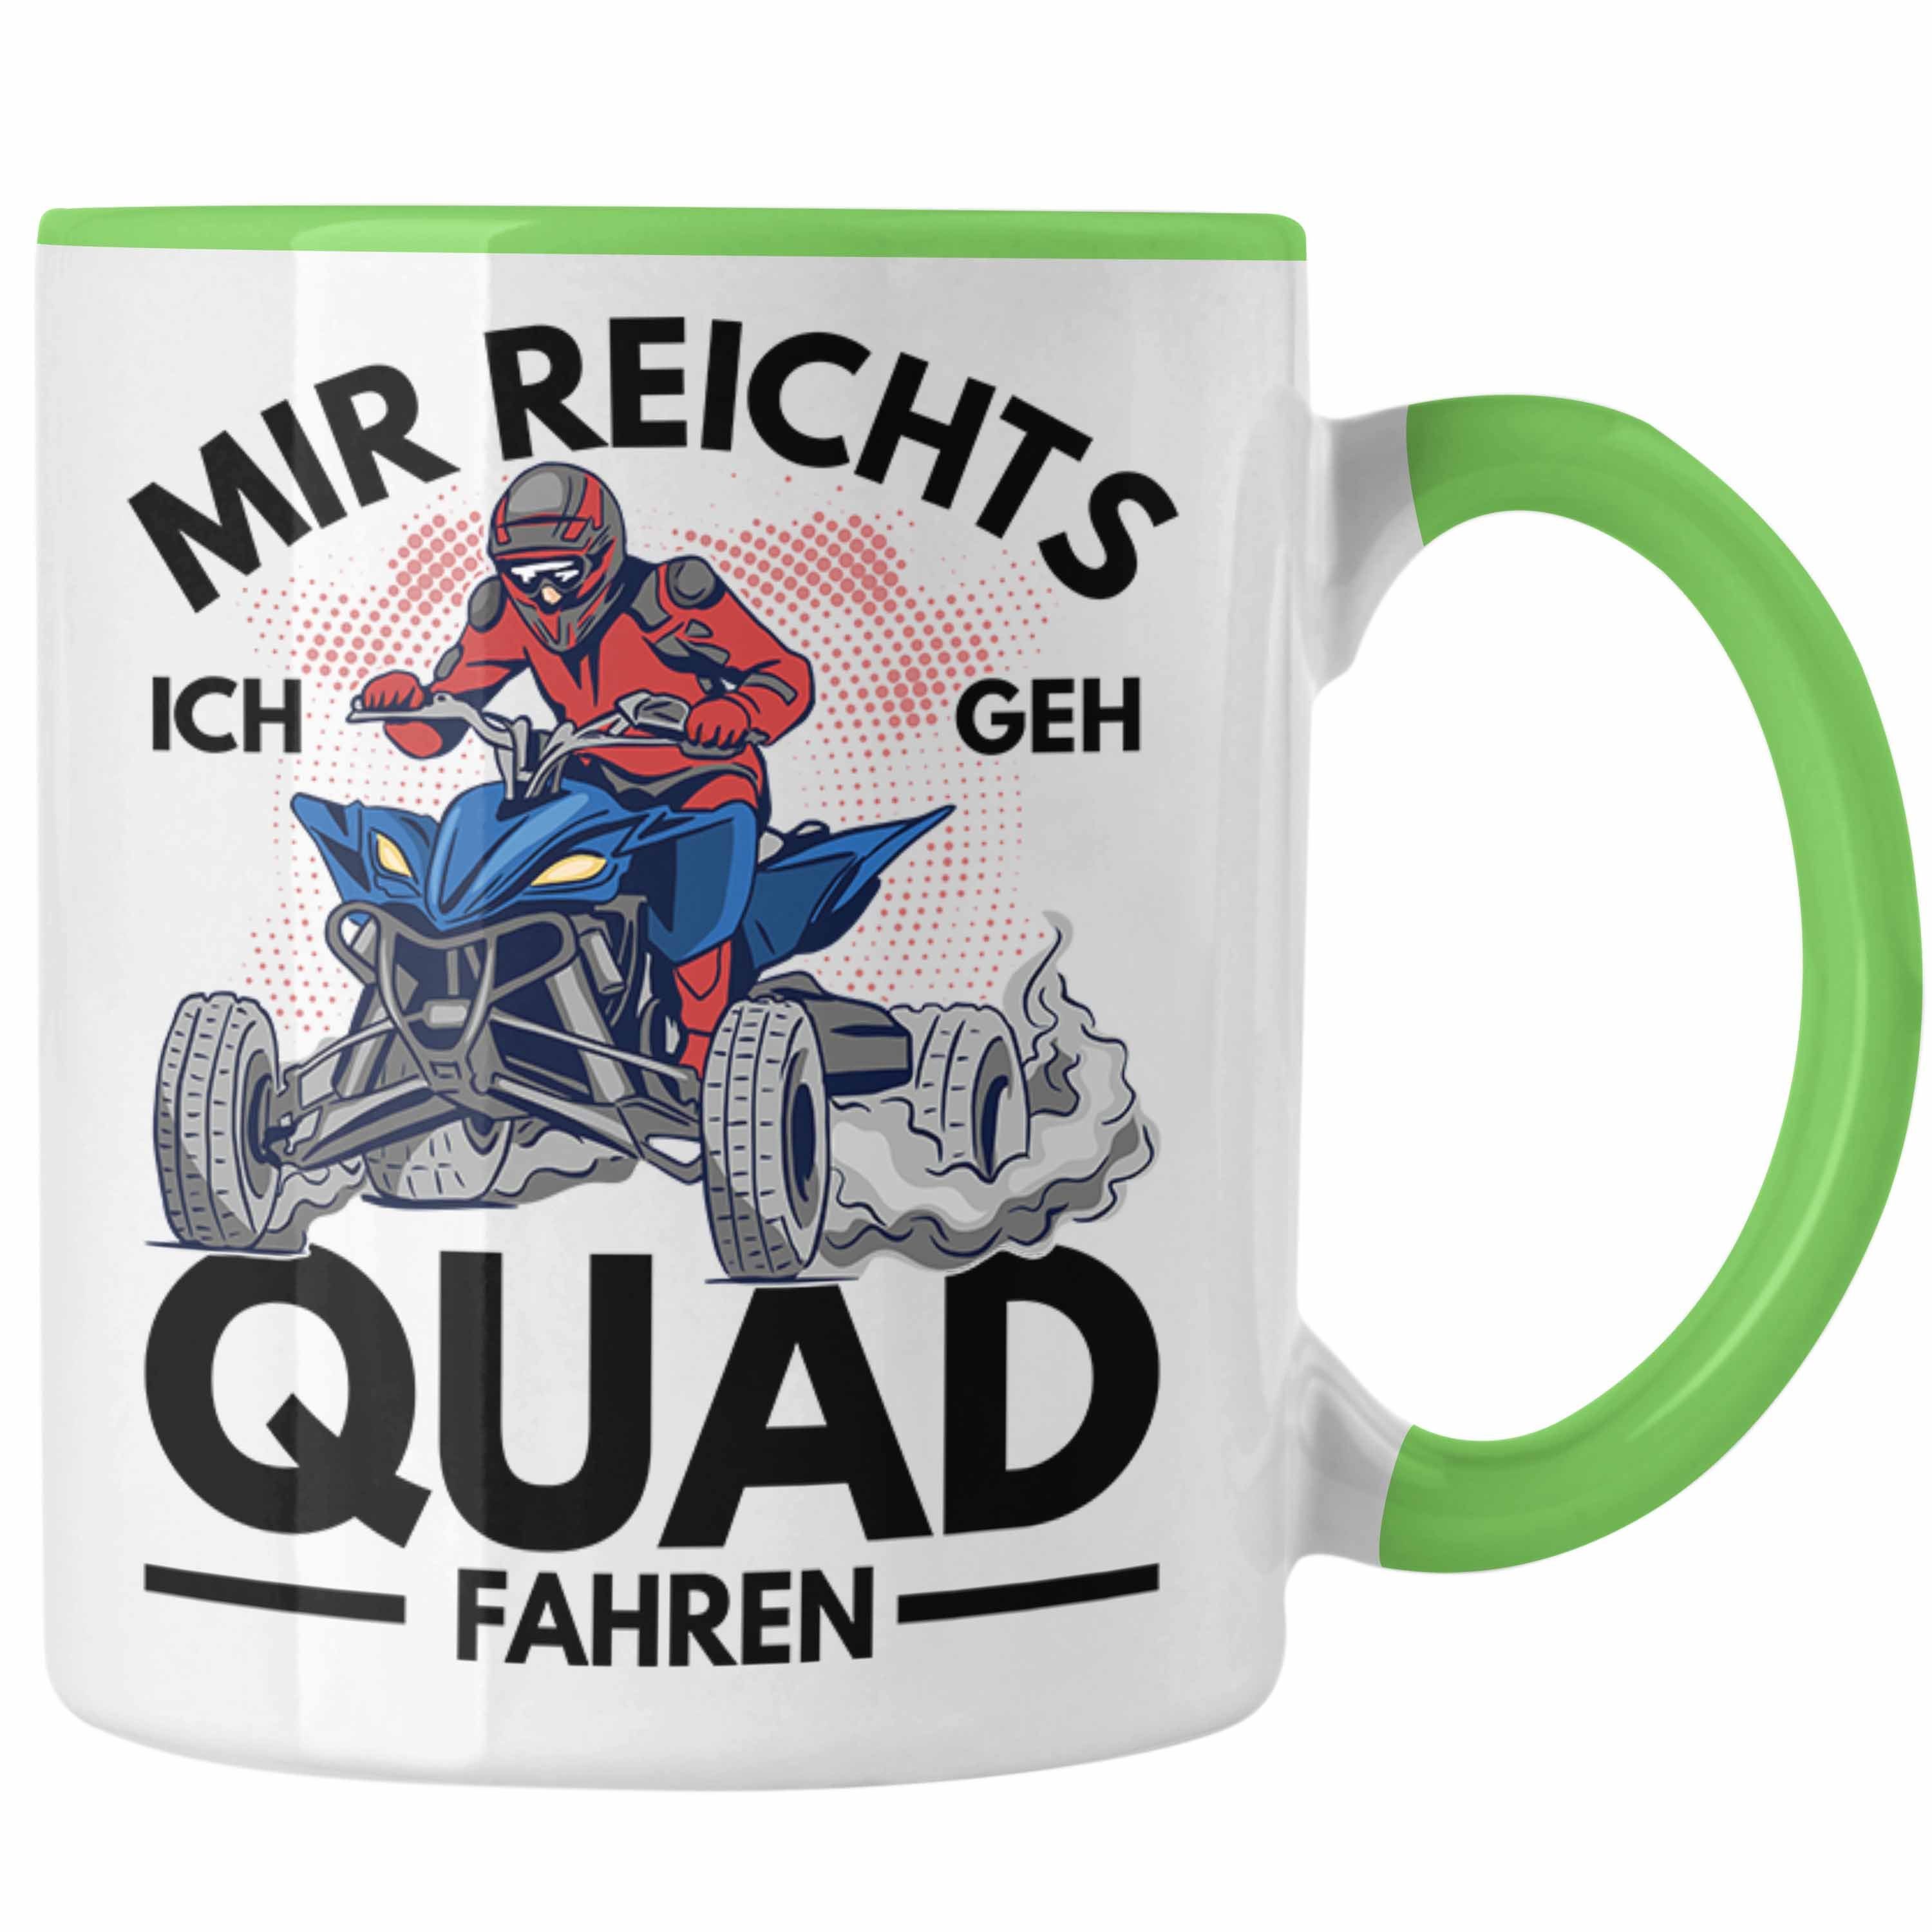 Geh Quad Spruch Trendation Mir Ich - Fahren Grün Tasse Reichts Bike 4x4 Geschenk Quadfahrer Tasse Trendation Quad